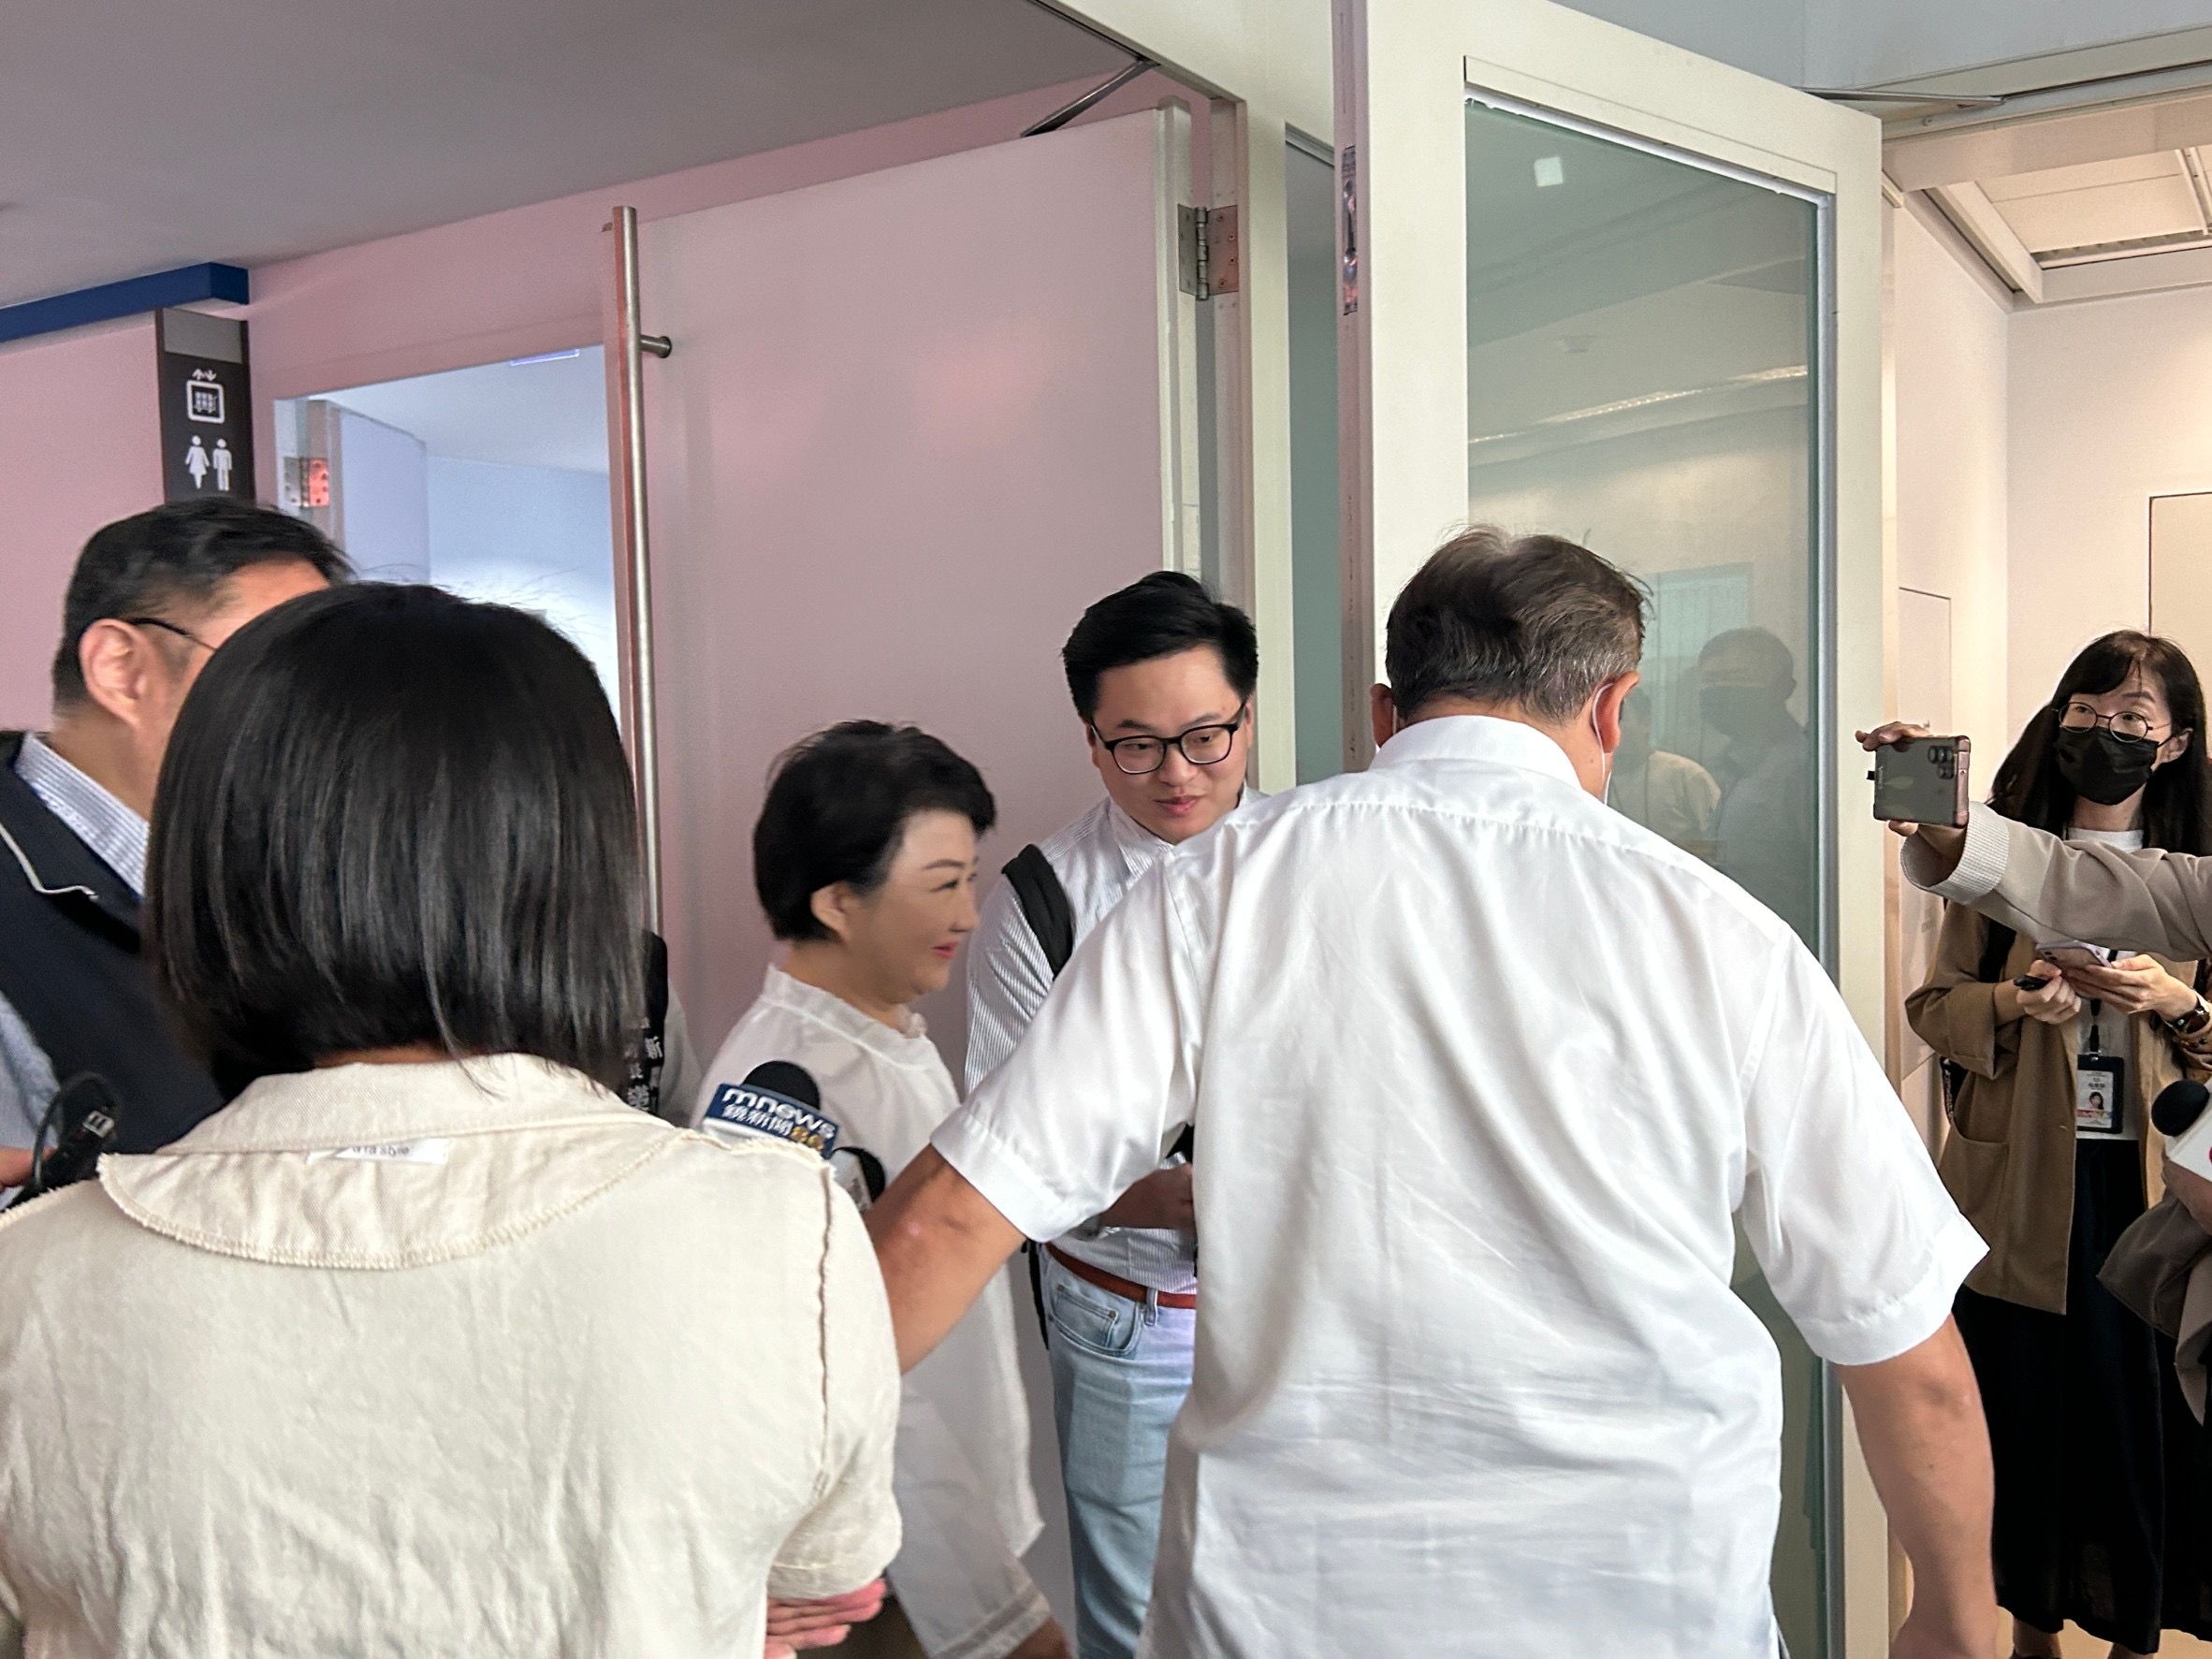 台中市长卢秀燕被问到有关问题，笑而不答，随即步入会场。记者赵容萱／摄影